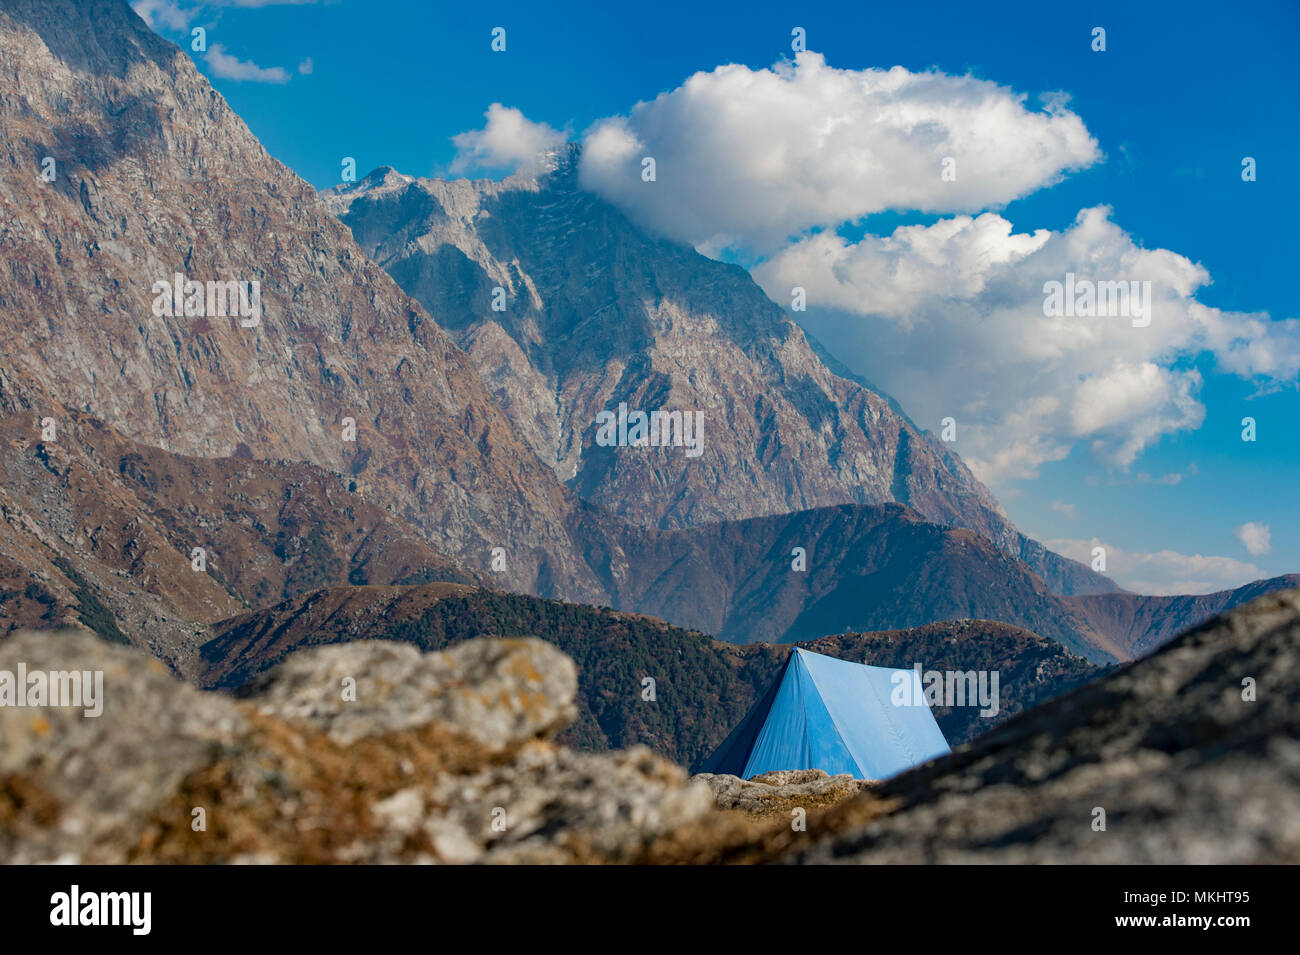 Un unico colore blu tenda visto contro Dhaulahaar vette dell'Himalaya in Triund. Giornata soleggiata con alcune nuvole. Dharamshala, Himachal Pradesh. India Foto Stock